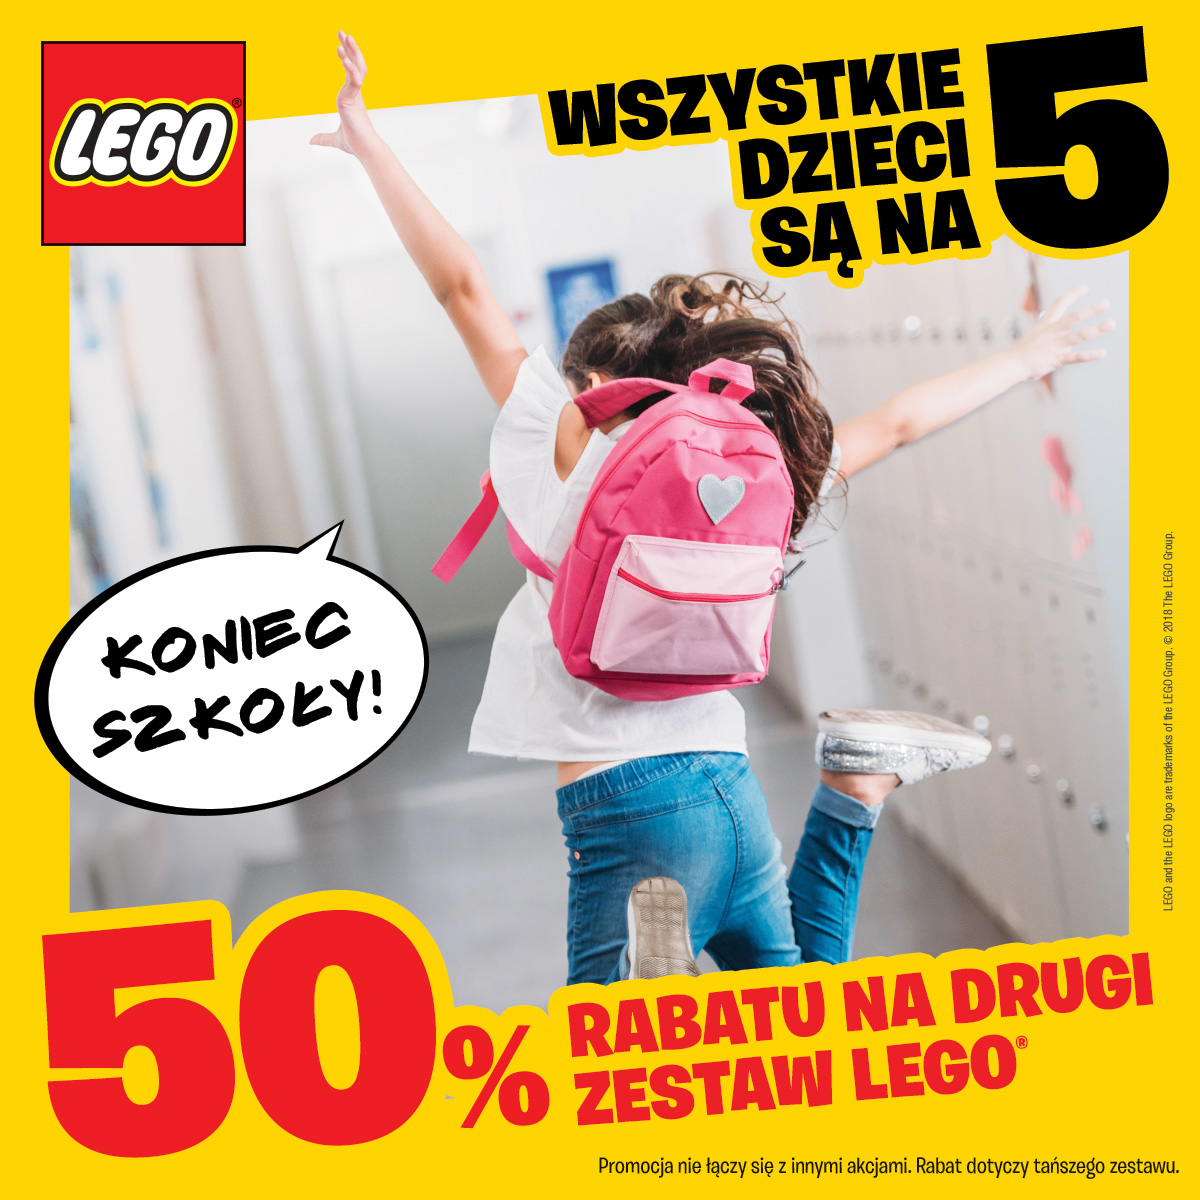 50% Rabatu na drugi zestaw LEGO